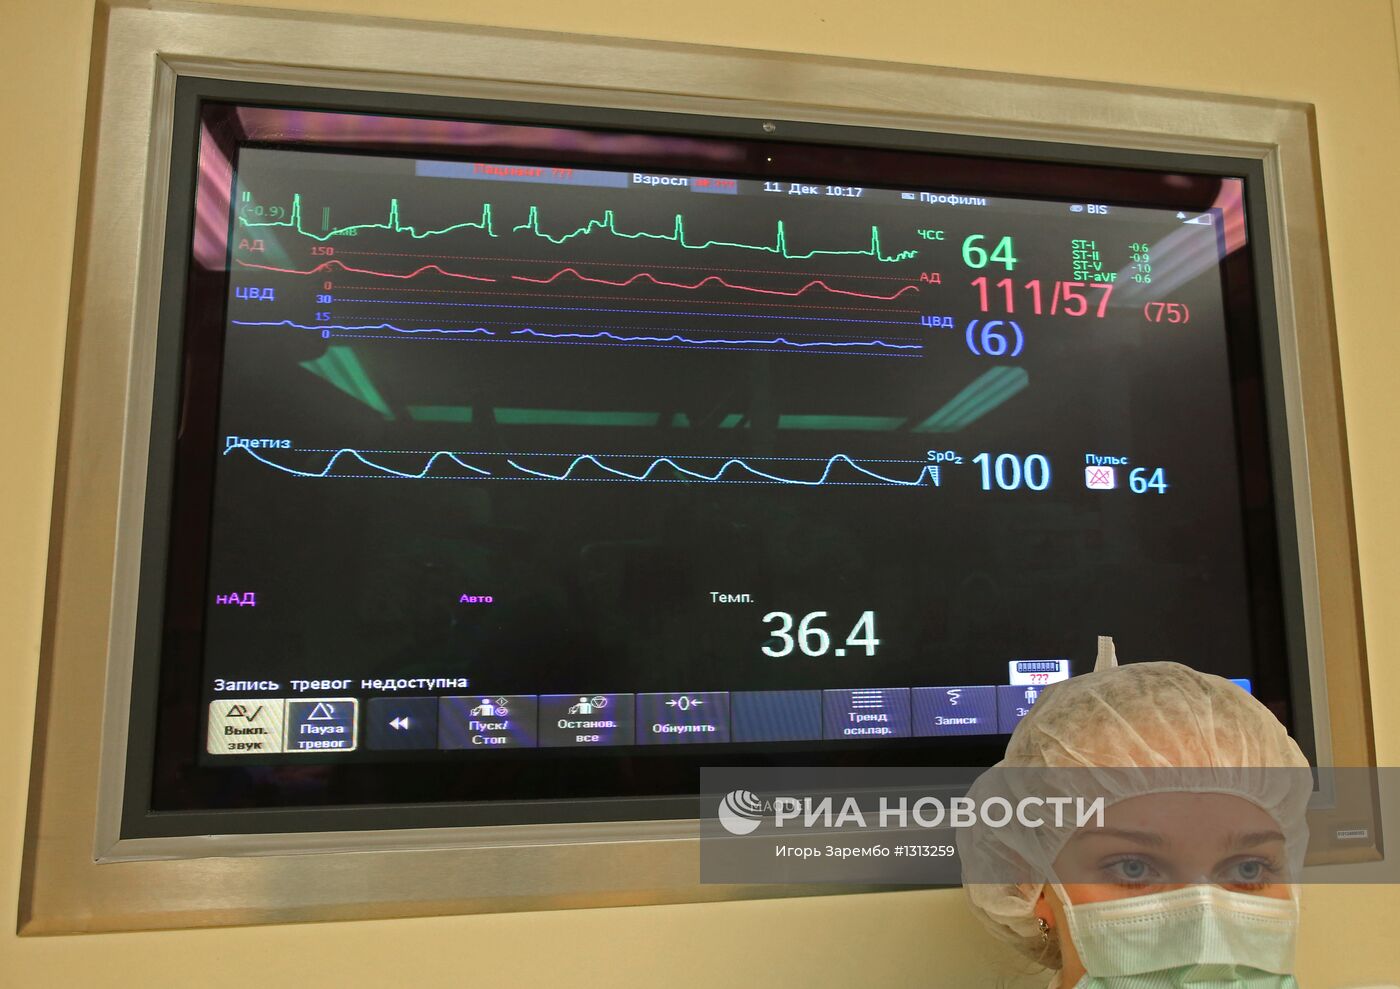 Работа Центра сердечно-сосудистой хирургии в Калининграде